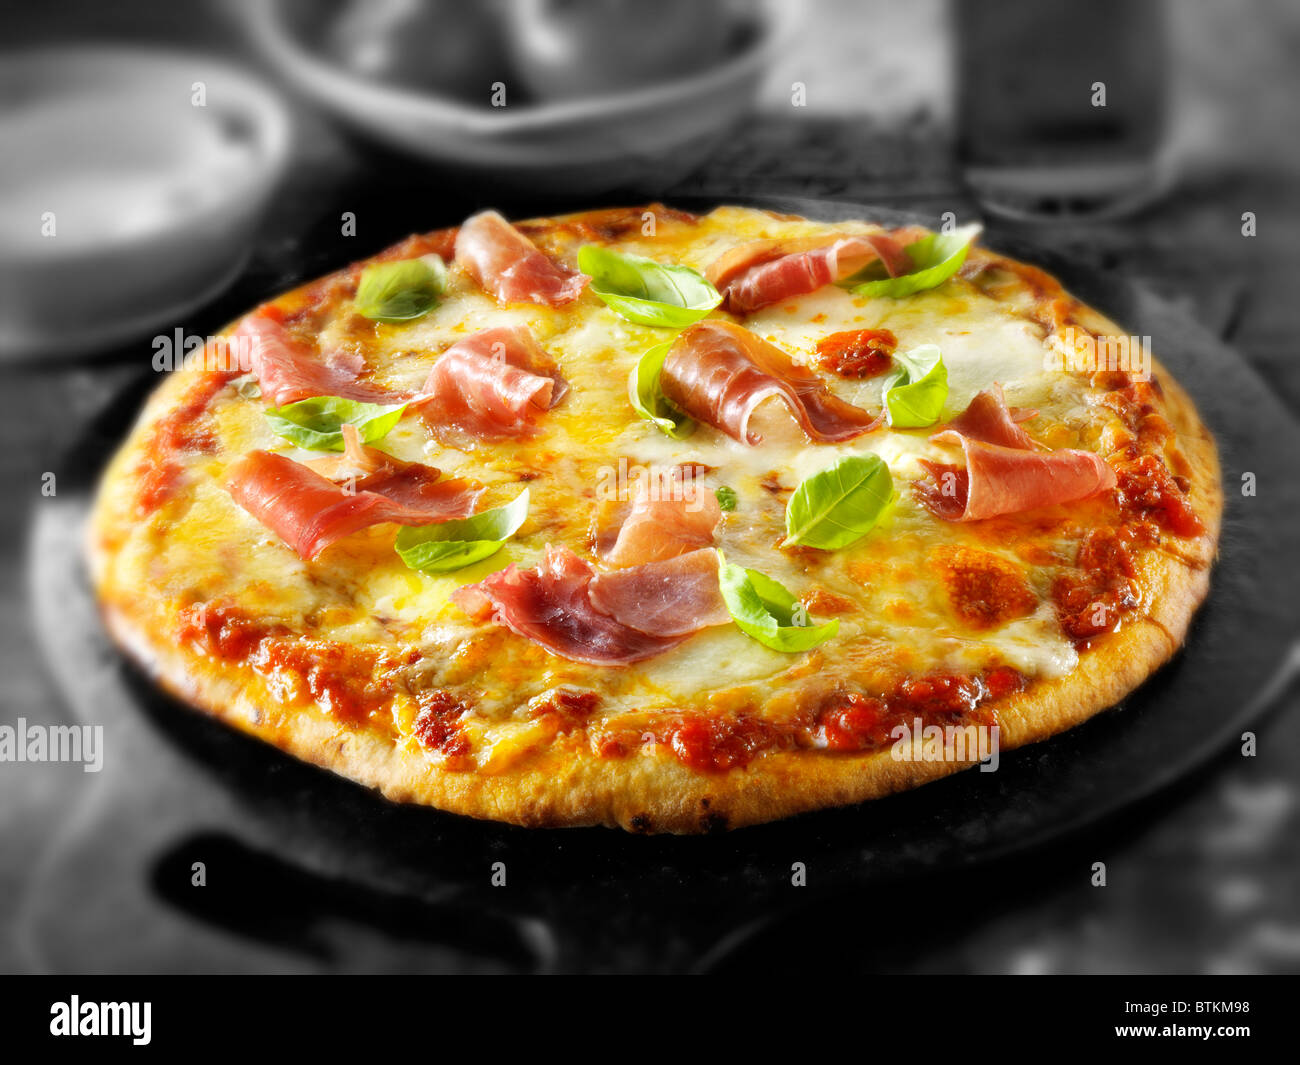 Whole prosciutto pizza Stock Photo